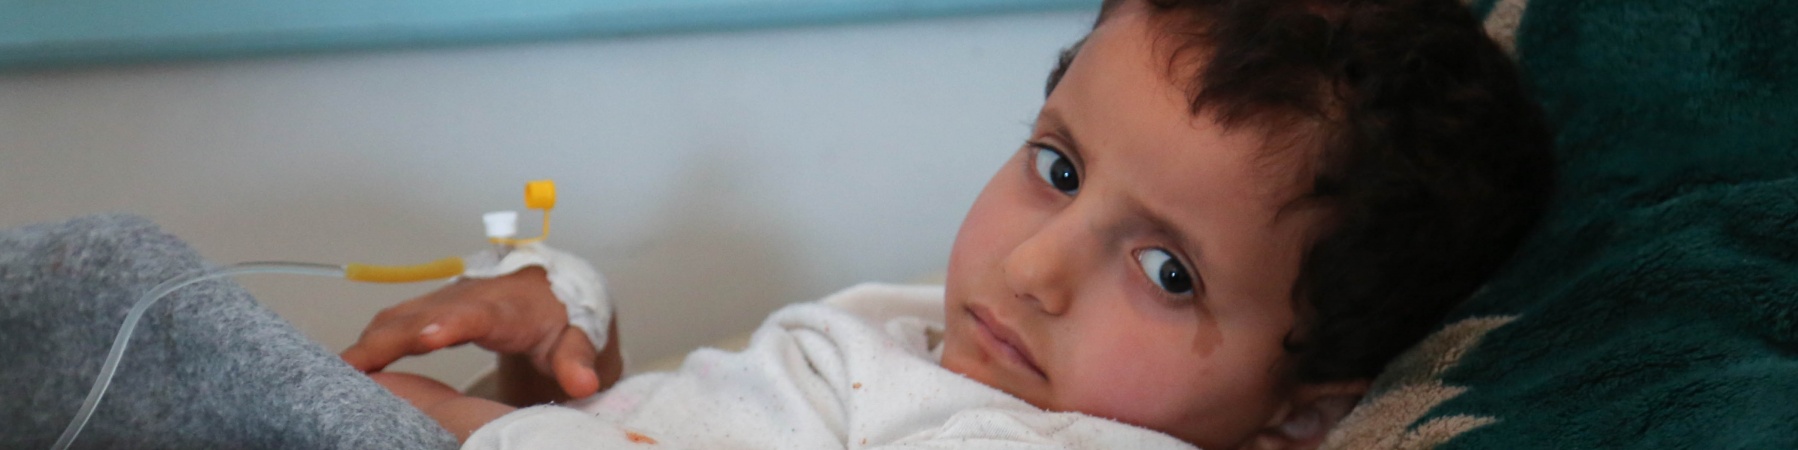 Un bambino in cura per il colera, epidemia che sta colpendo lo Yemen